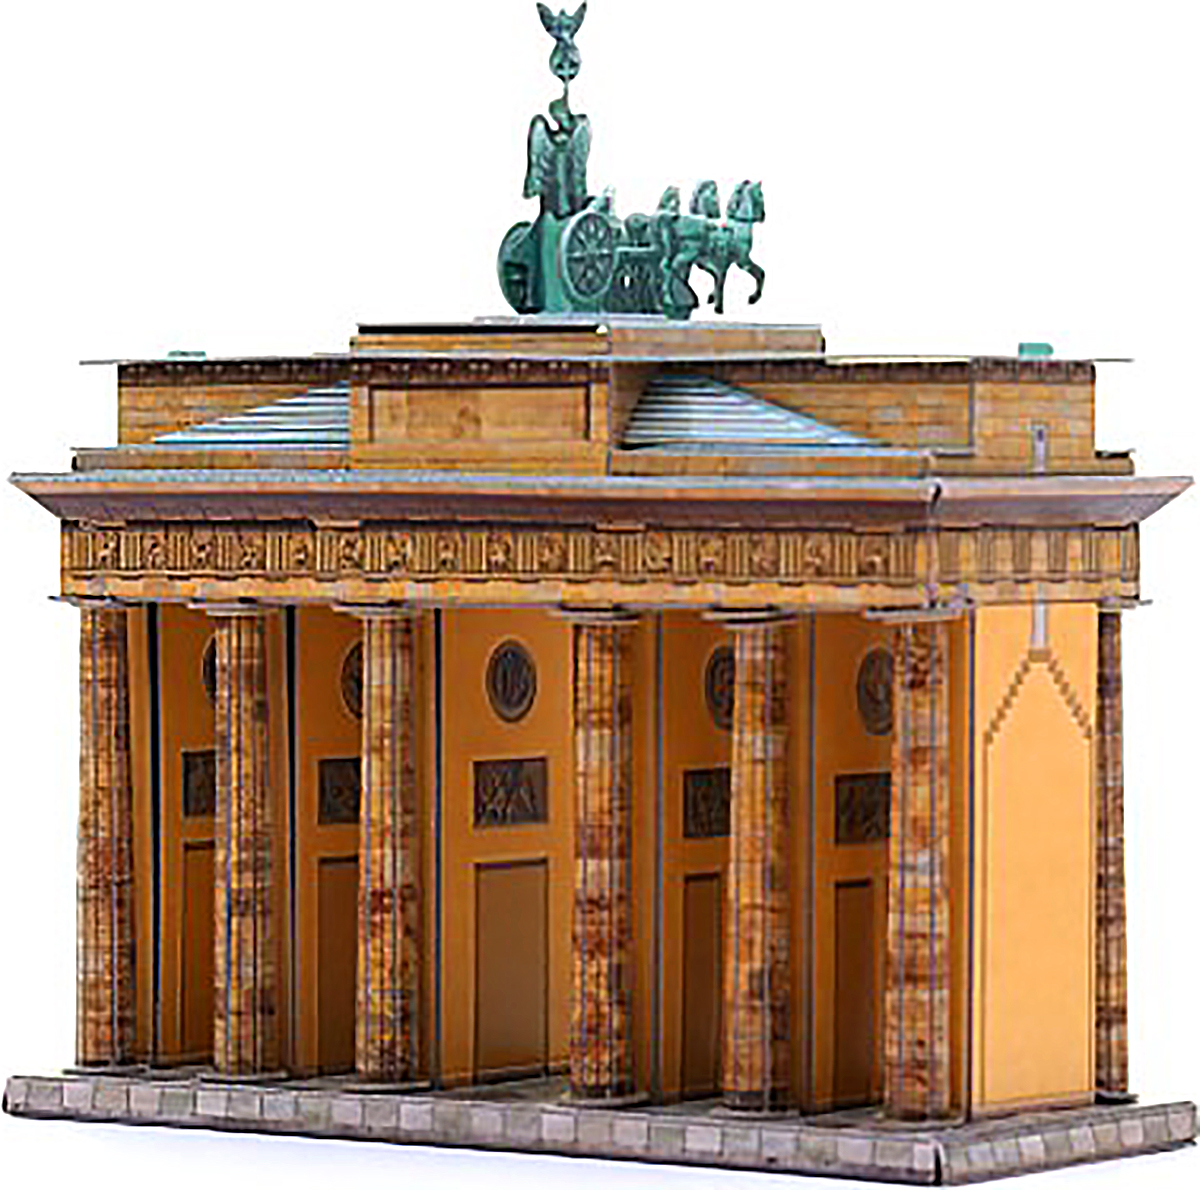 3D Puzzle KARTONMODELLBAU Papier Modell Geschenk Idee Spielzeug Brandenburger Tor